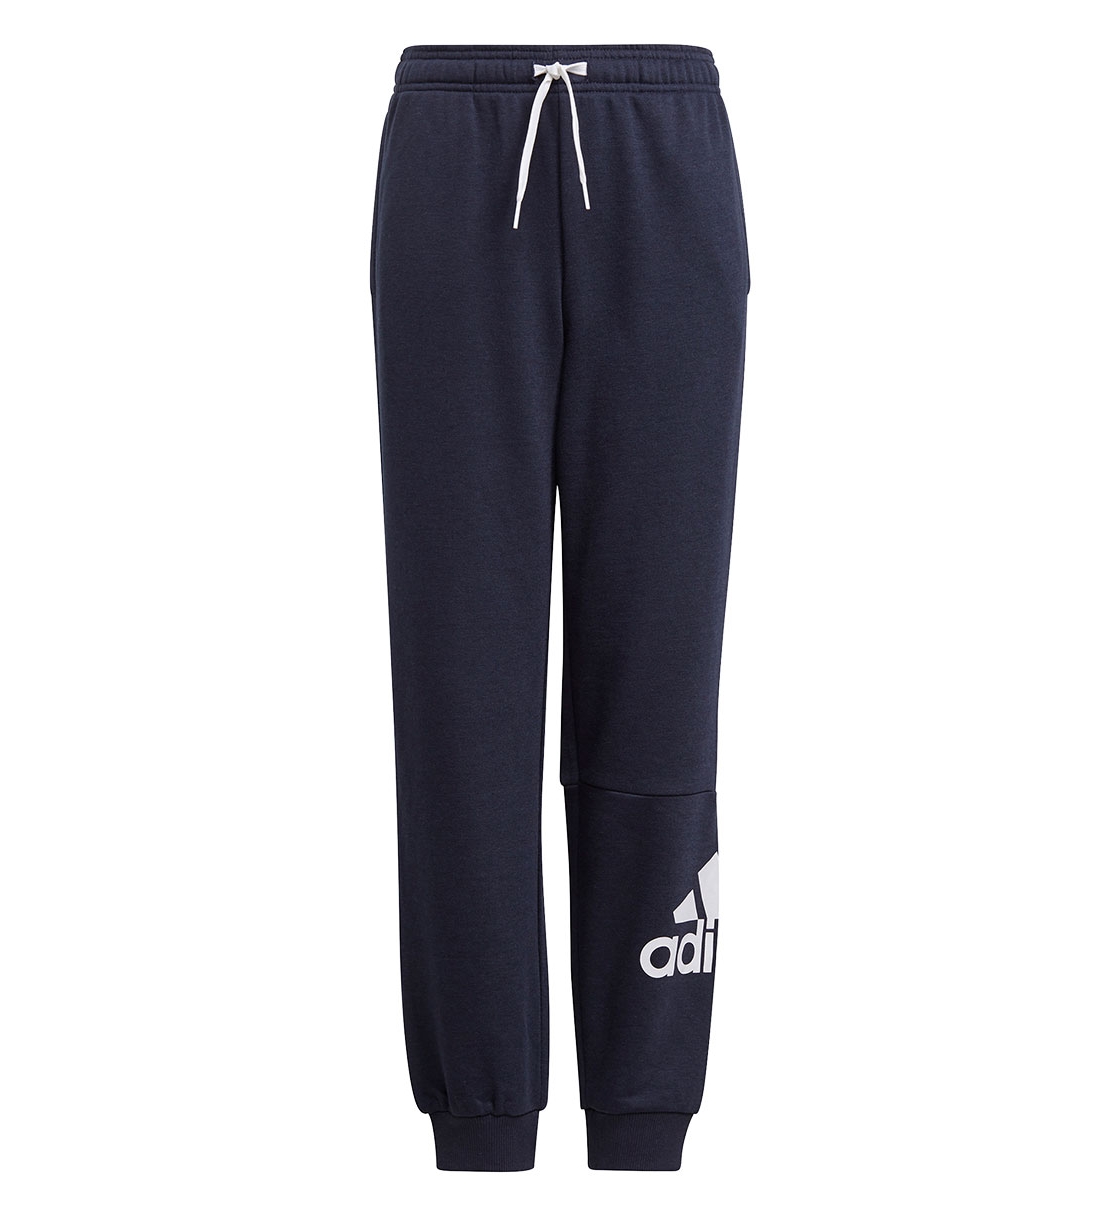 adidas Παιδικό Αθλητικό Παντελόνι  Fw21 Adidas Boys Essentials Big Logo Pant GN4036